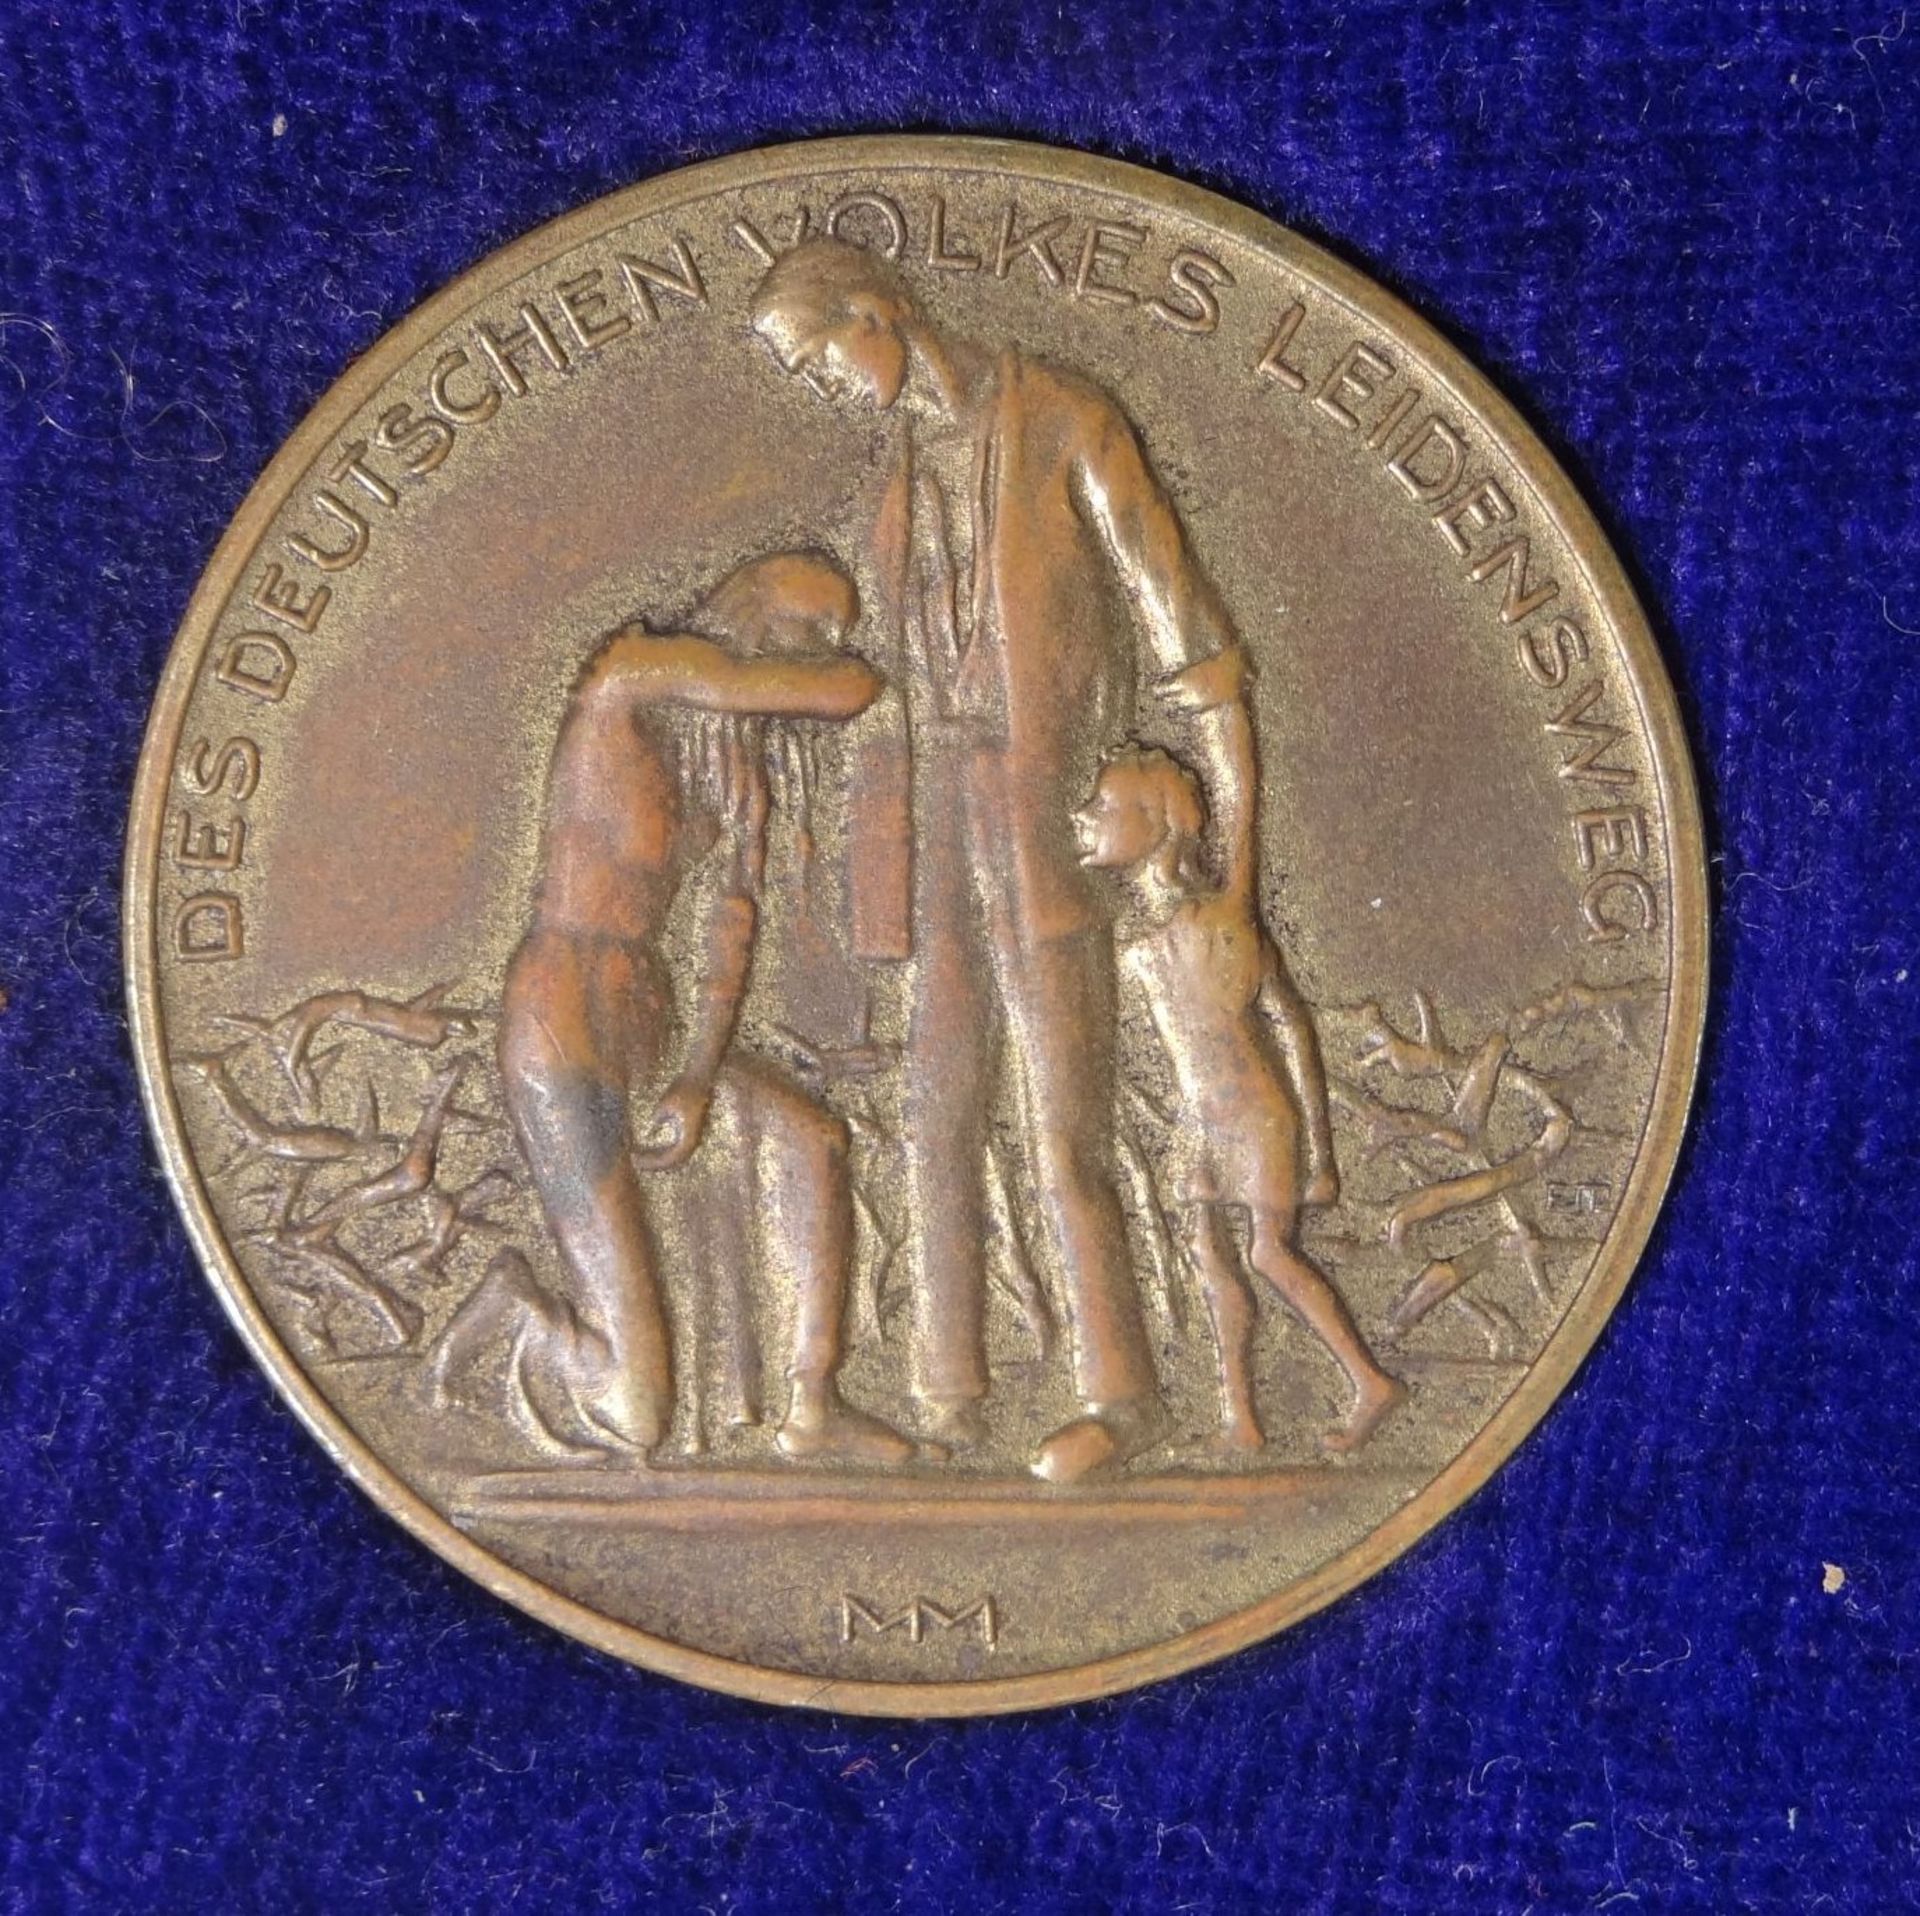 3x Medaillen "Des deutschen Volkes Leidensweg" Inflation 1923, in beschädigter Schachte - Bild 2 aus 7